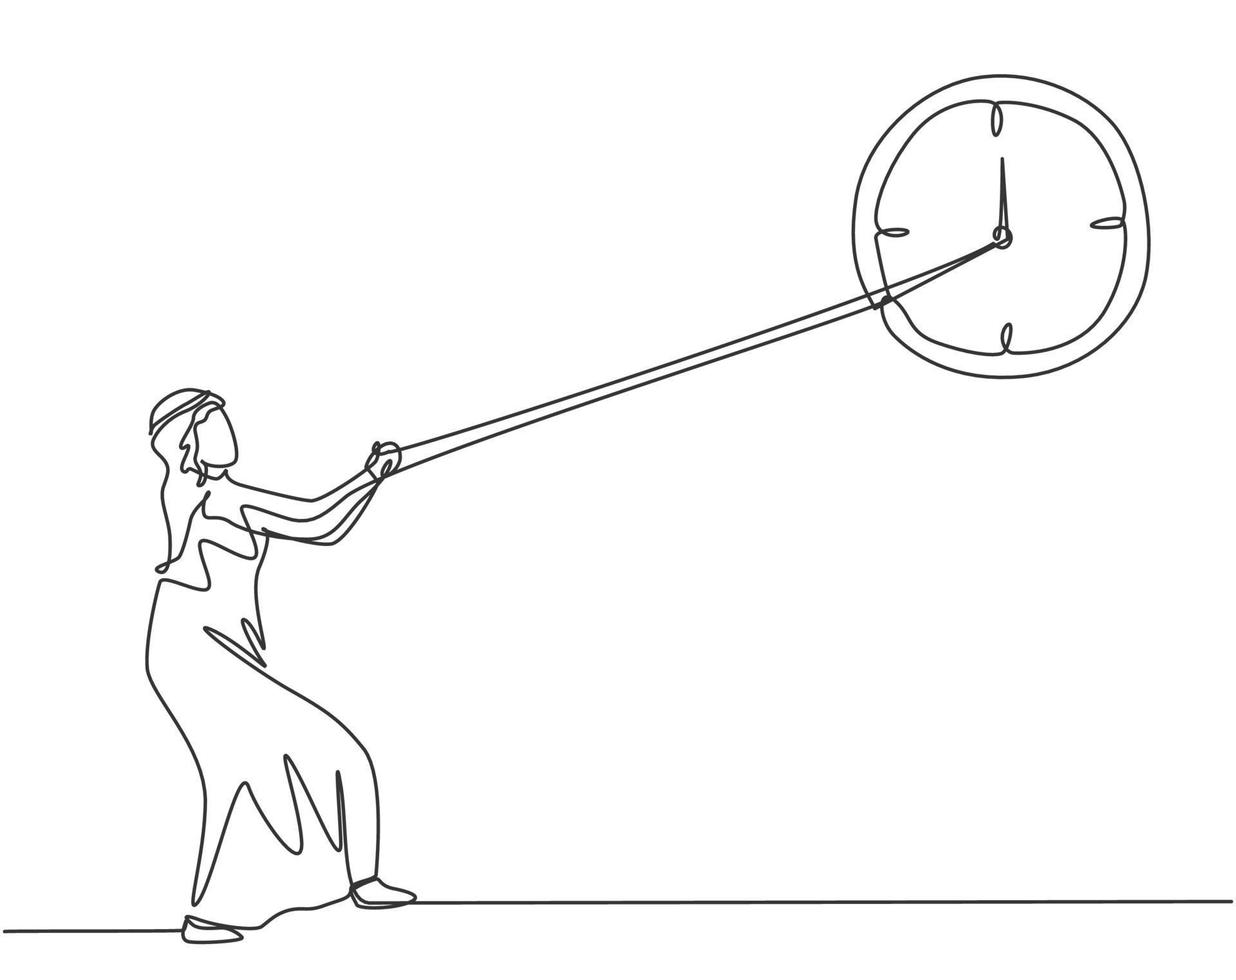 enkele doorlopende lijntekening jonge Arabische zakenman die met de klok mee trekt van grote analoge wandklok met touw. time management metafoor concept. een lijn tekenen grafisch ontwerp vector grafische afbeelding.